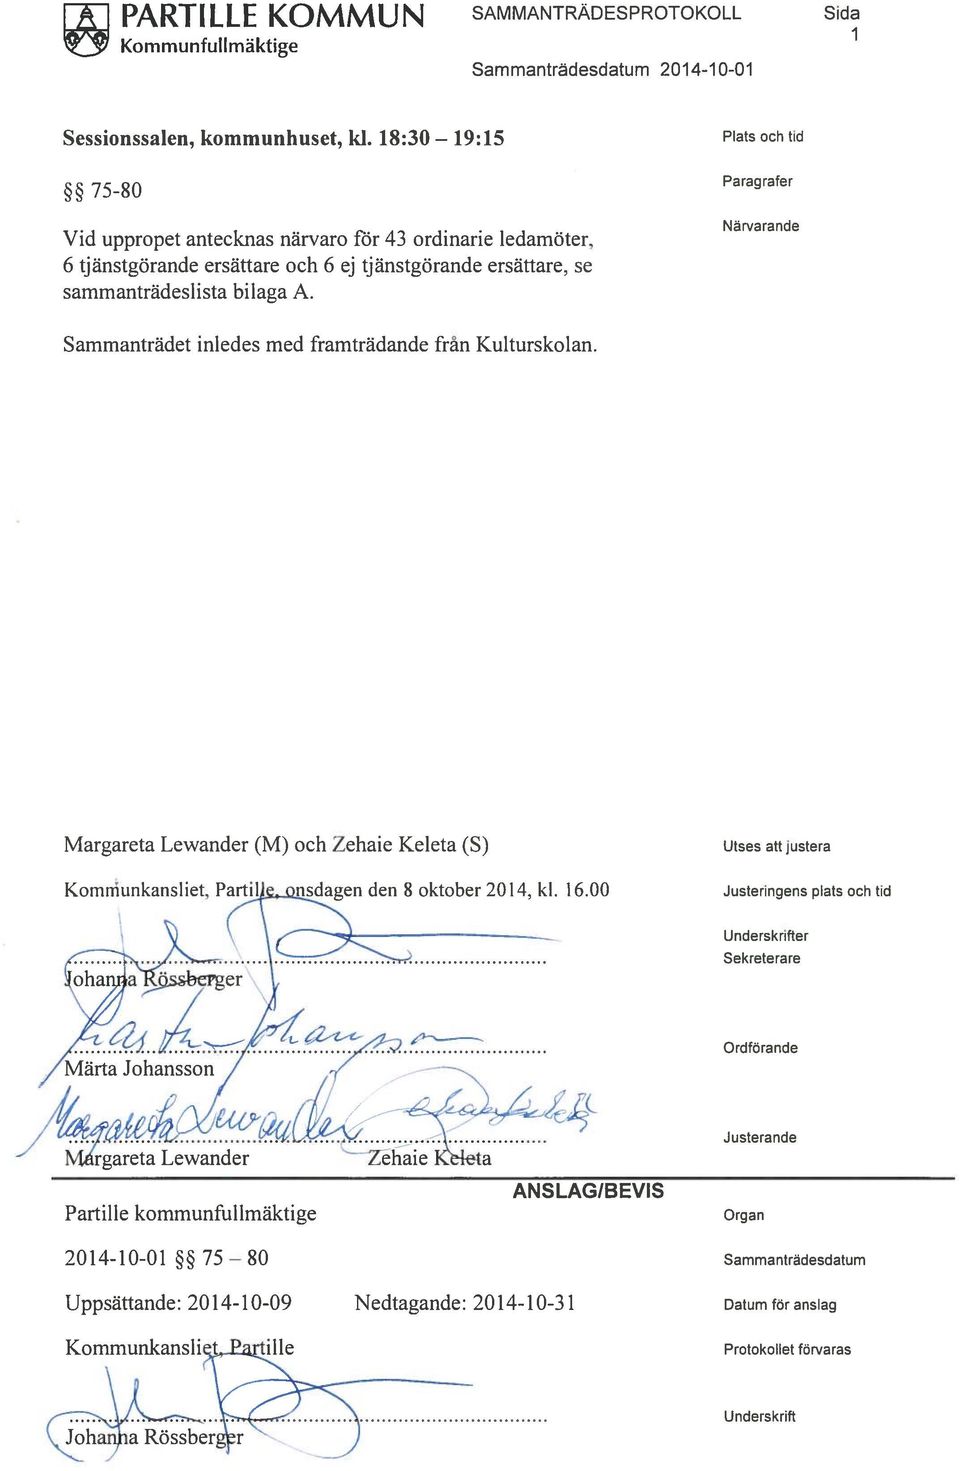 Plats och tid Paragrafer Närvarande Sammanträdet inledes med framträdande från Kulturskolan. Margareta Lewander (M) och Zehaie Keleta (5) Komniunkansliet, den 8oktober2014, kl. 16.